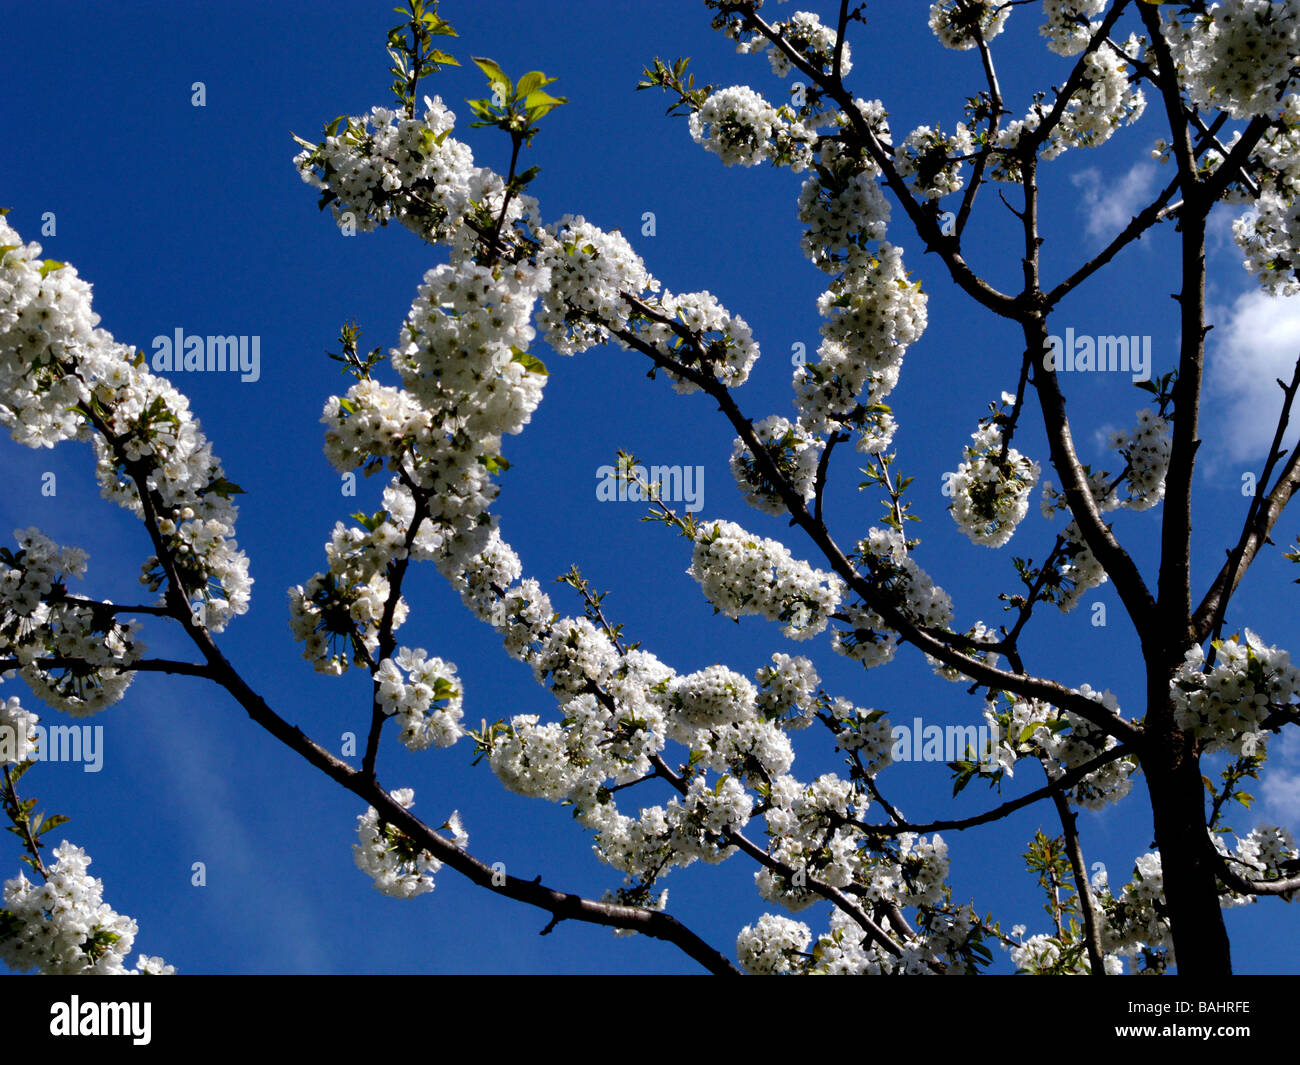 White Flowering Cherry Tree Against Blue Sky Stock Photo